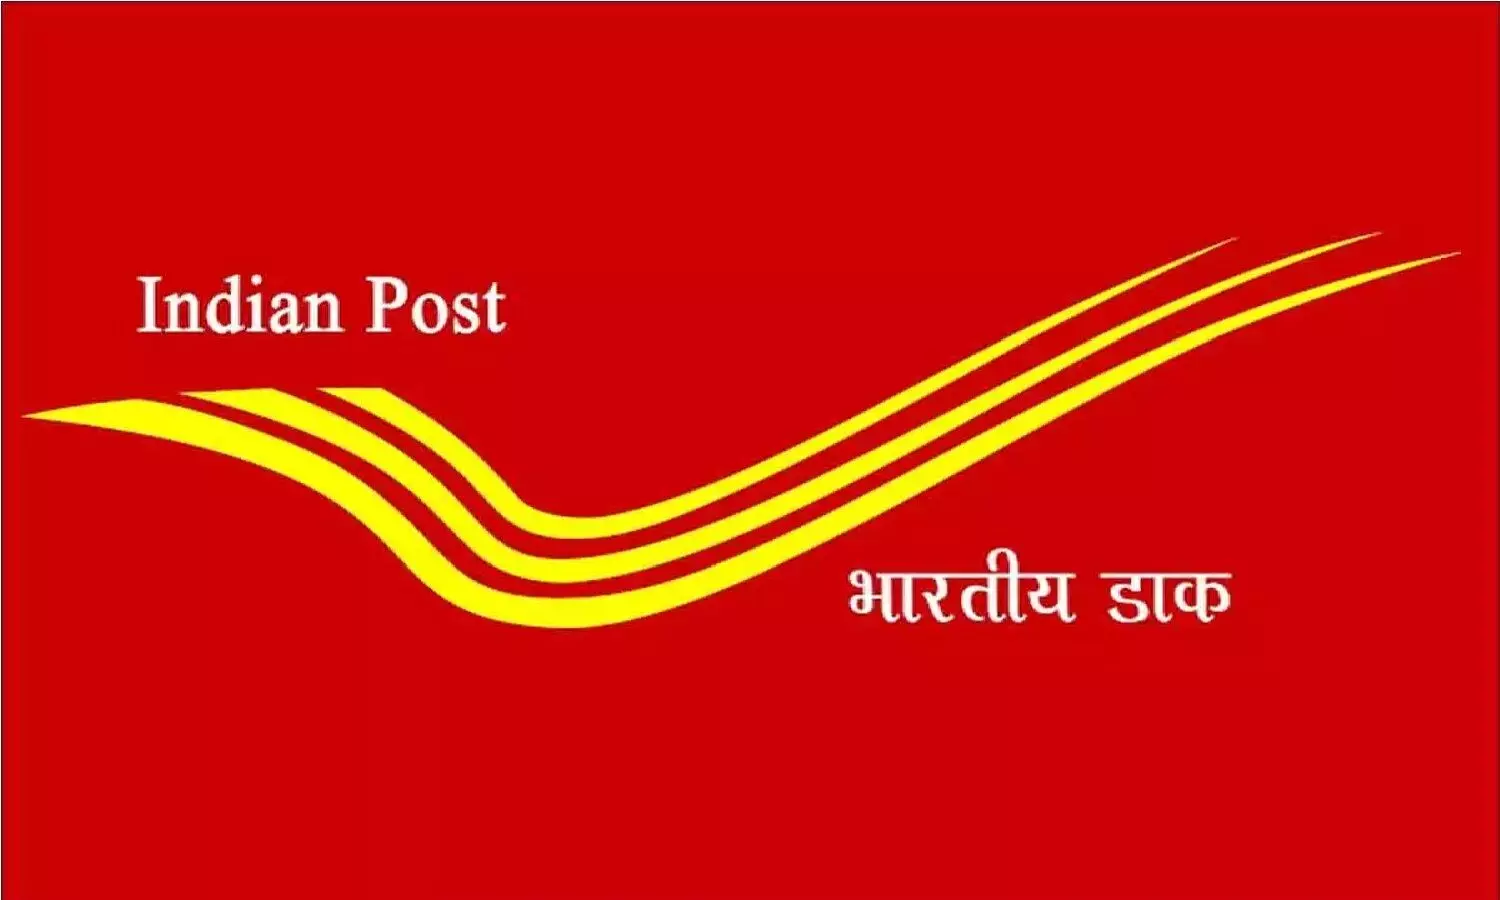 India Post Recruitment 2022: डाक विभाग में निकली बंपर भर्ती, 10 मार्च तक कर सकते है अप्लाई, जानिए!